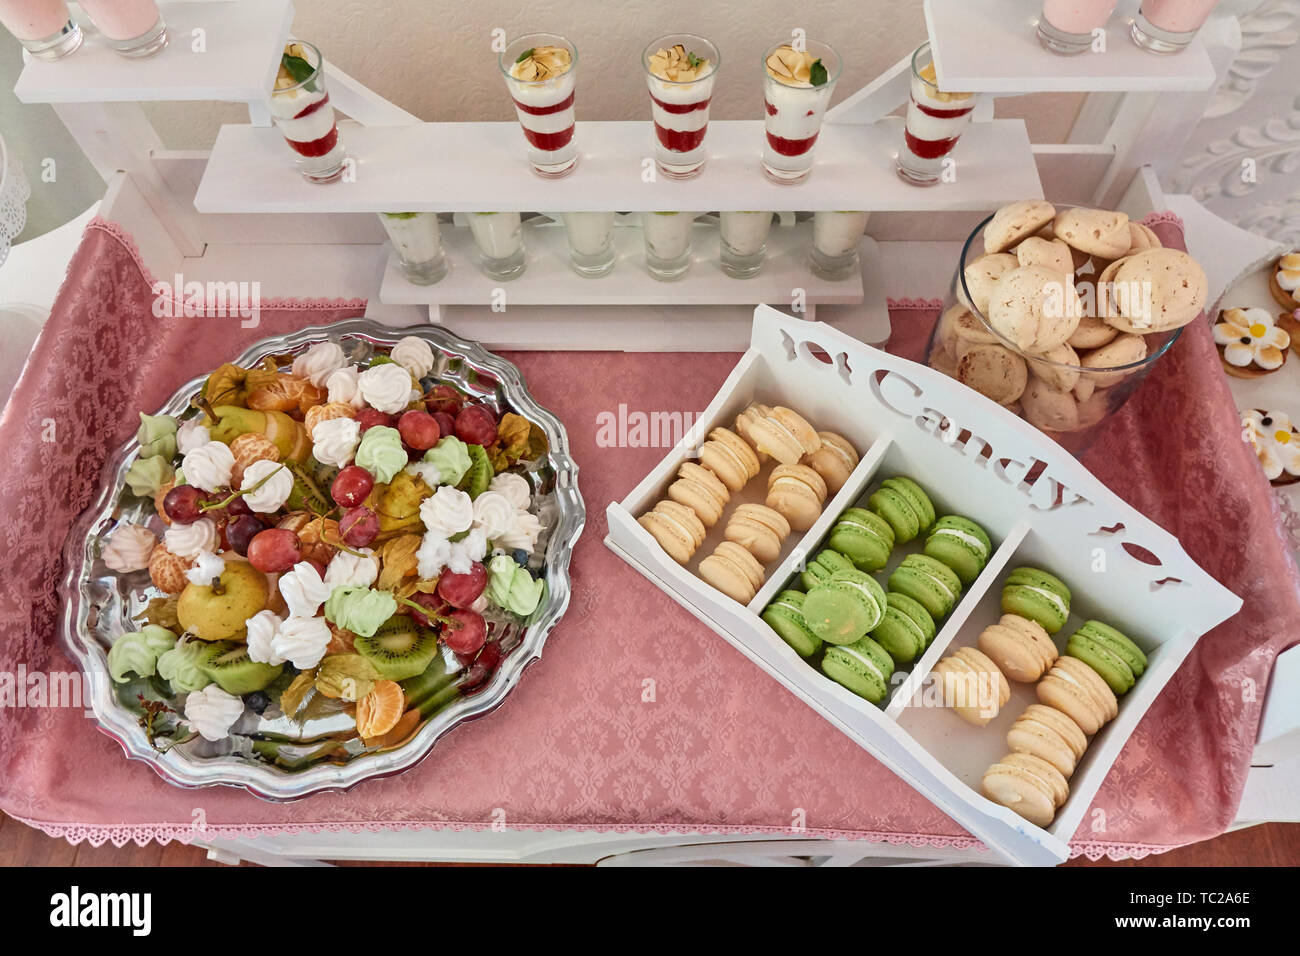 Candy bar splendidamente servito sul tavolo bianco con dolci, frutta, amaretti e altri dolci, matrimonio lusso assortimento Foto Stock